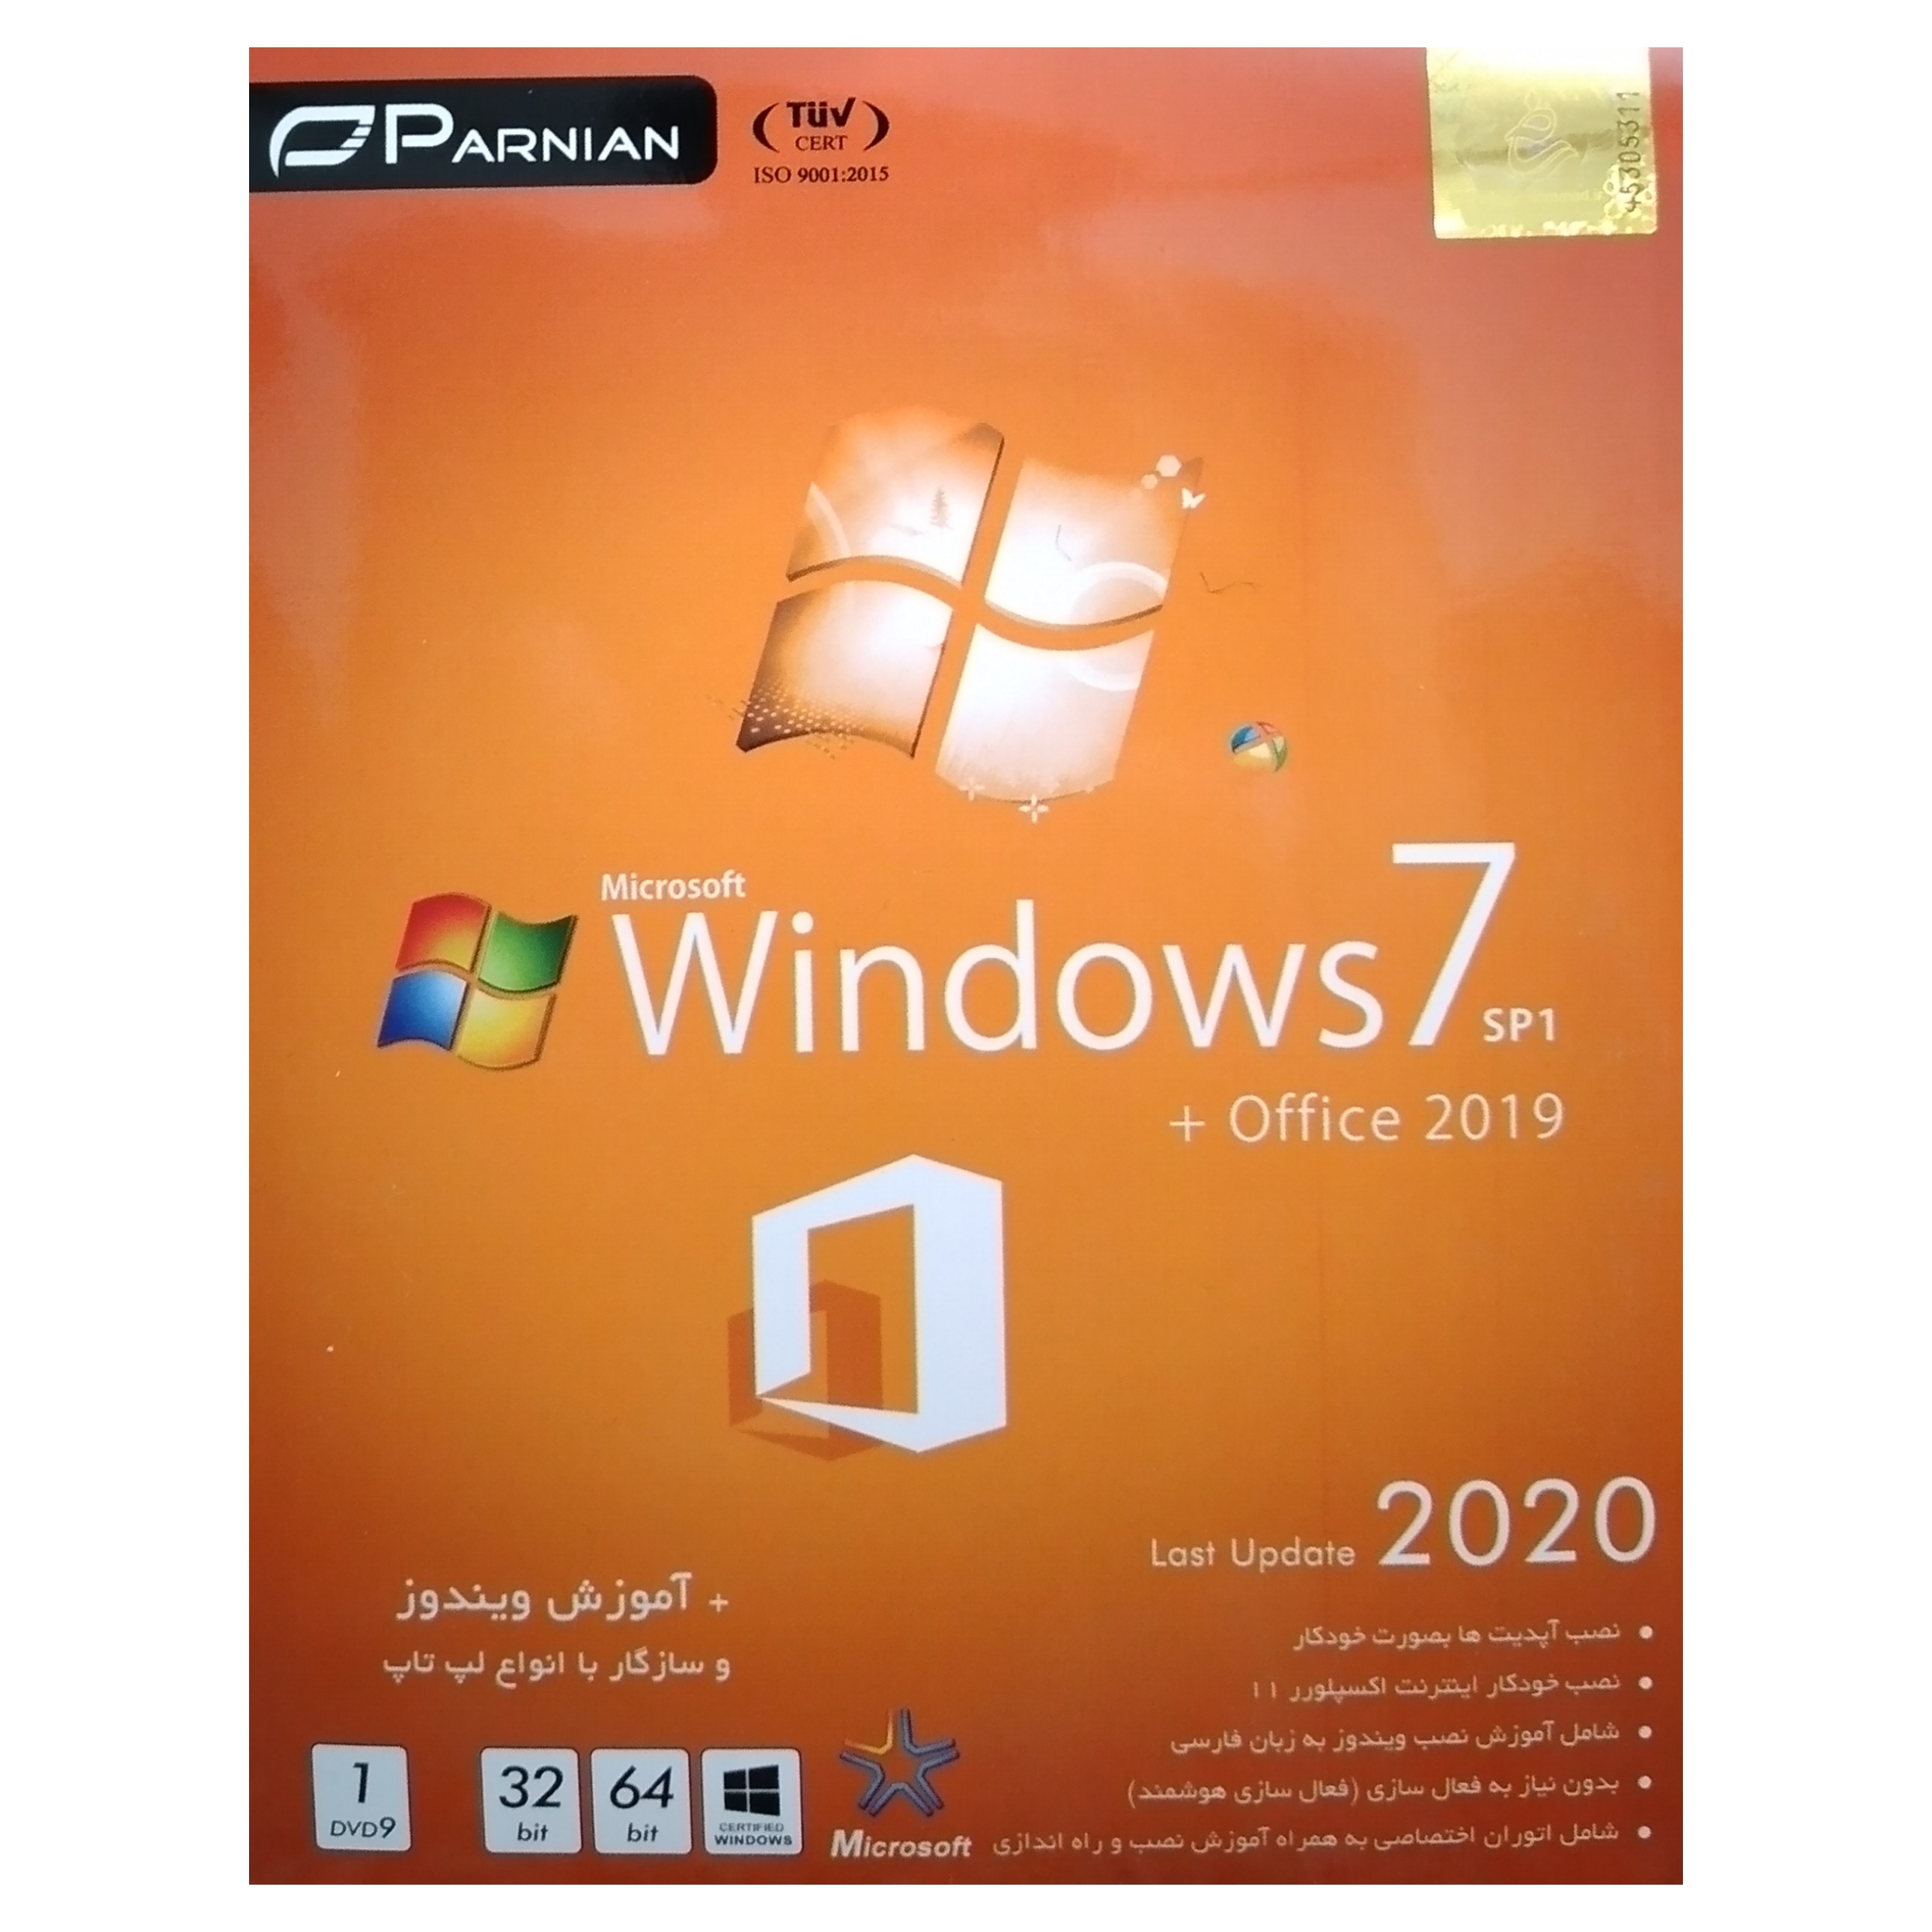 سیستم عامل windows 7 نسخه 2020 + office 2019 SP1 نشر پرنیان